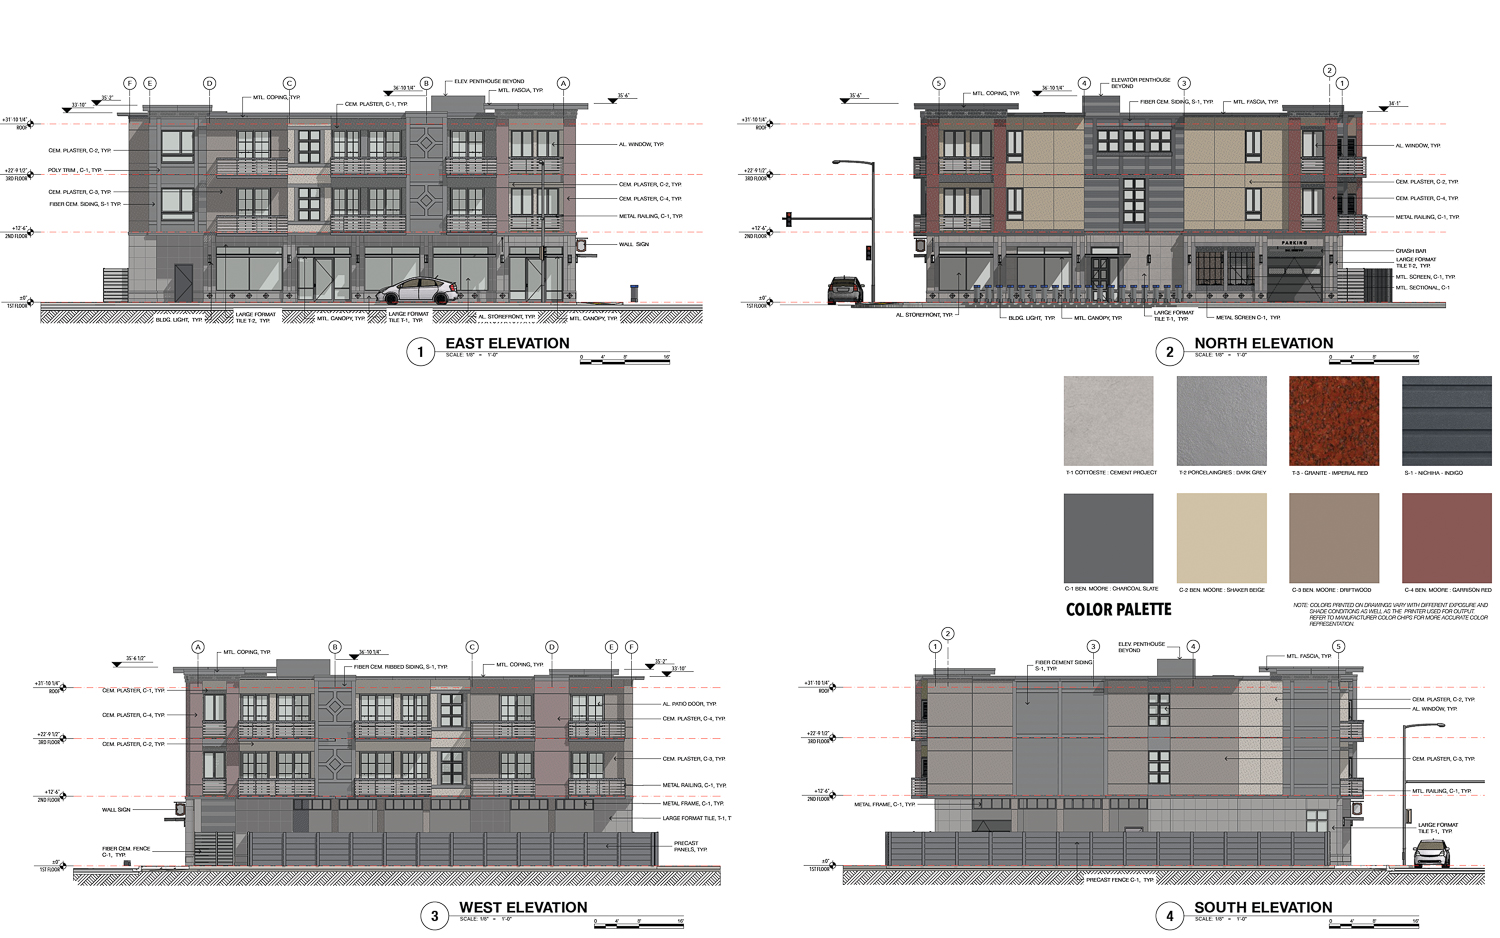 6341 Shattuck Avenue facade elevations, illustrations by SKL Associates